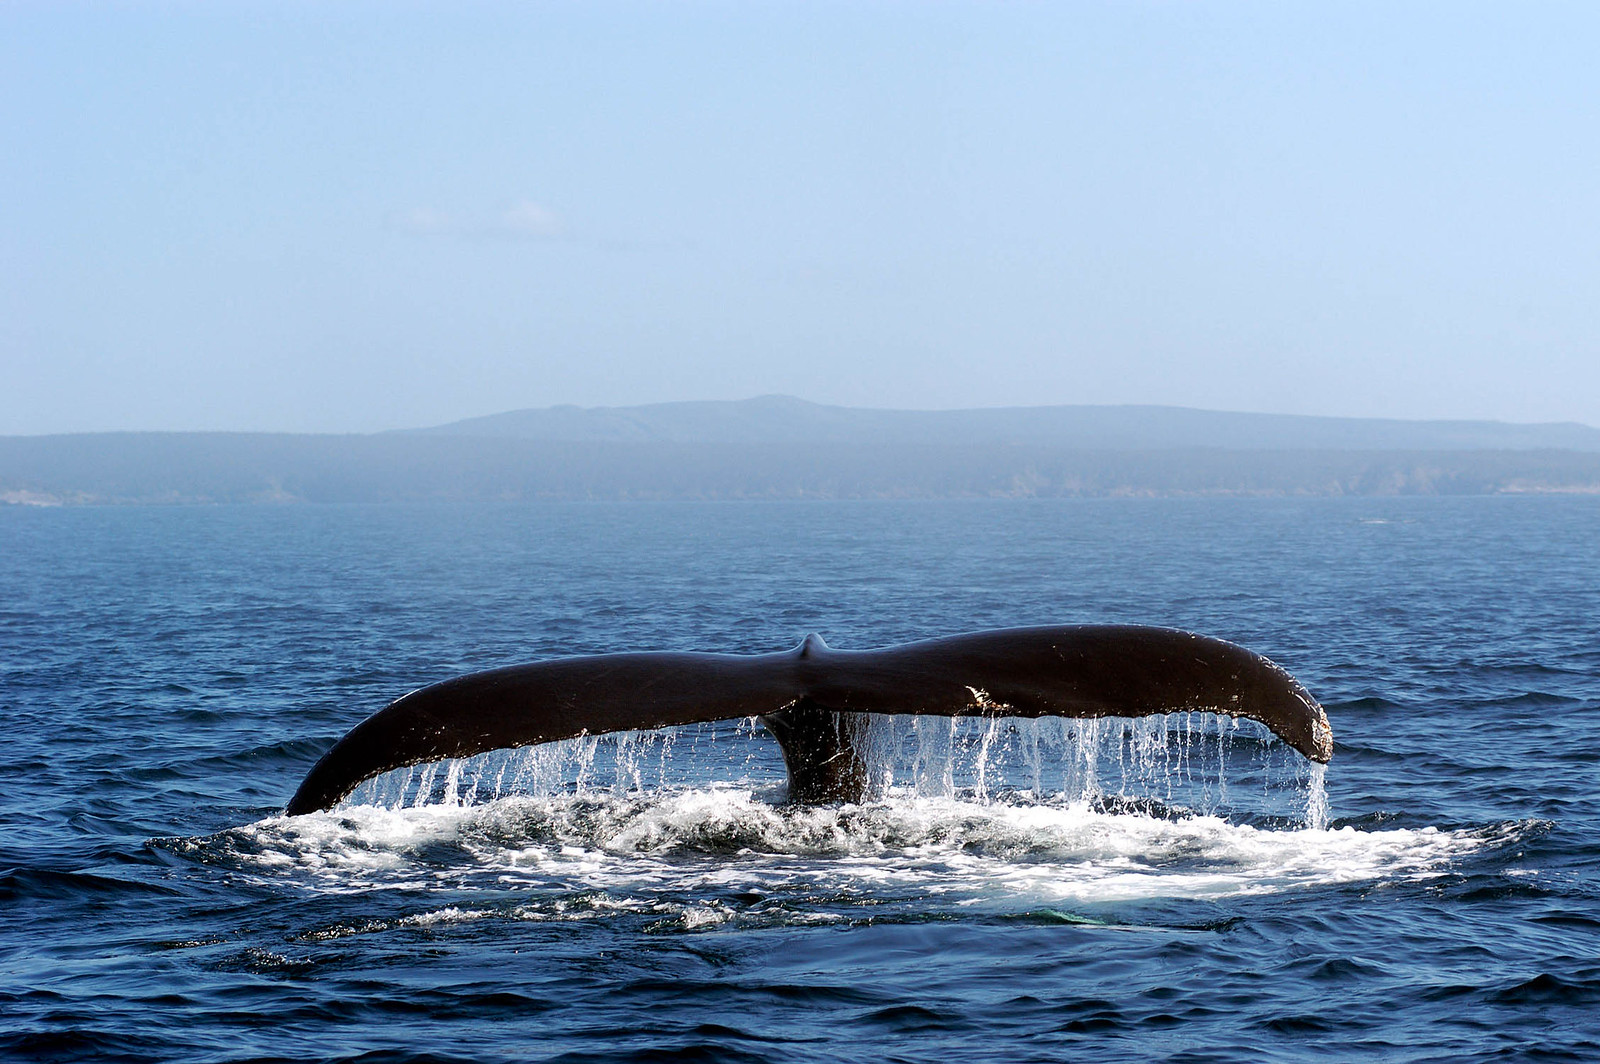 Hampback whale tail off the coast of Newfoundland Canada